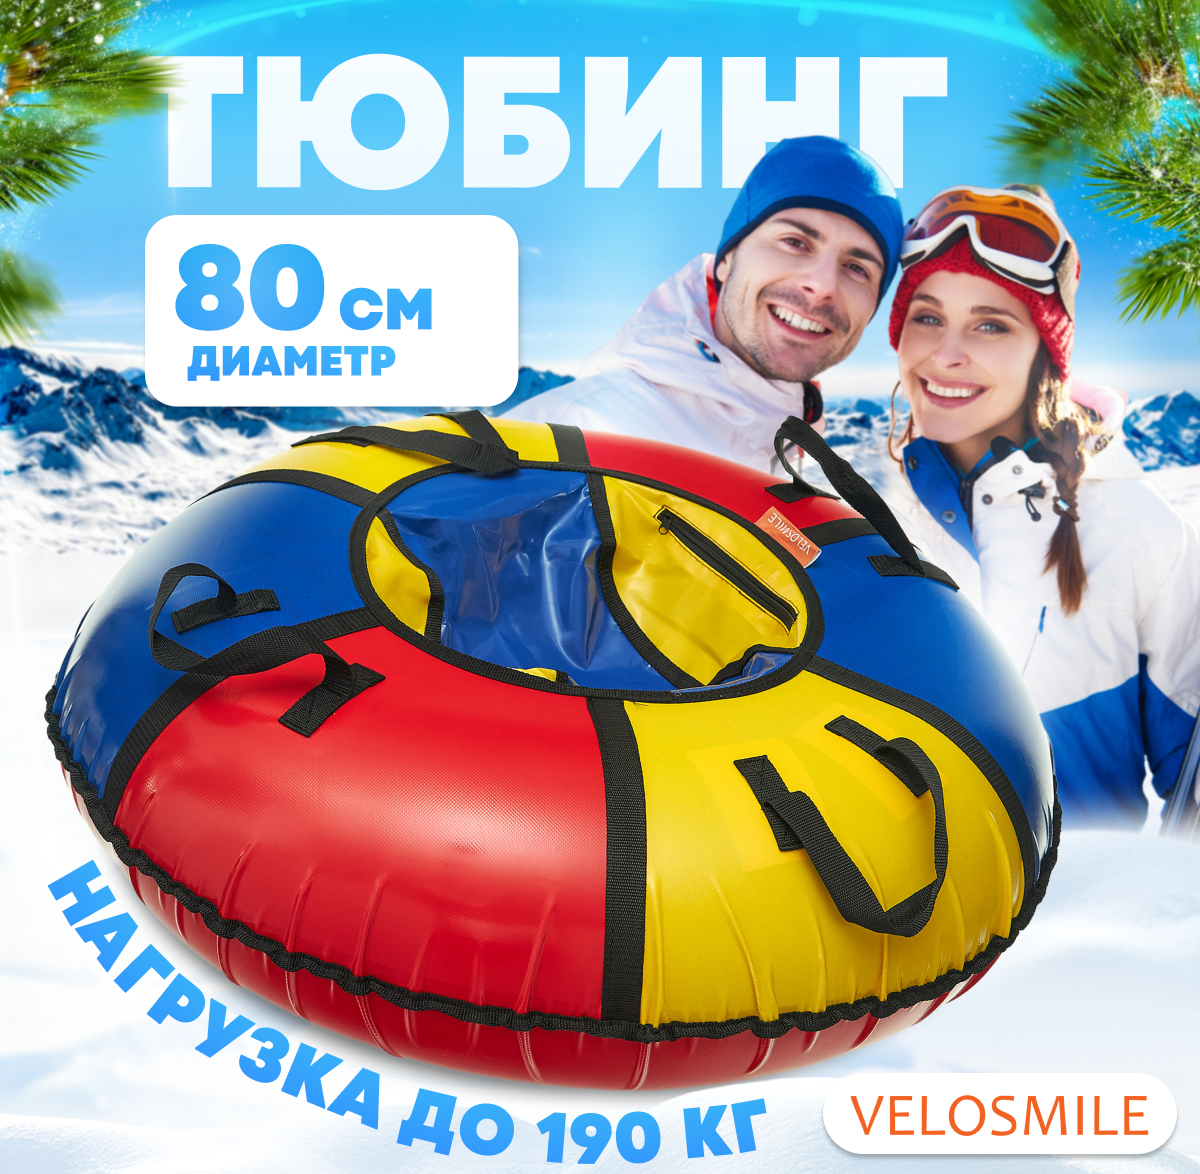 Ватрушка-Тюбинг для катания зимняя VeloSmile "Вьюга" 80 см ПВХ (с молнией и российской камерой)